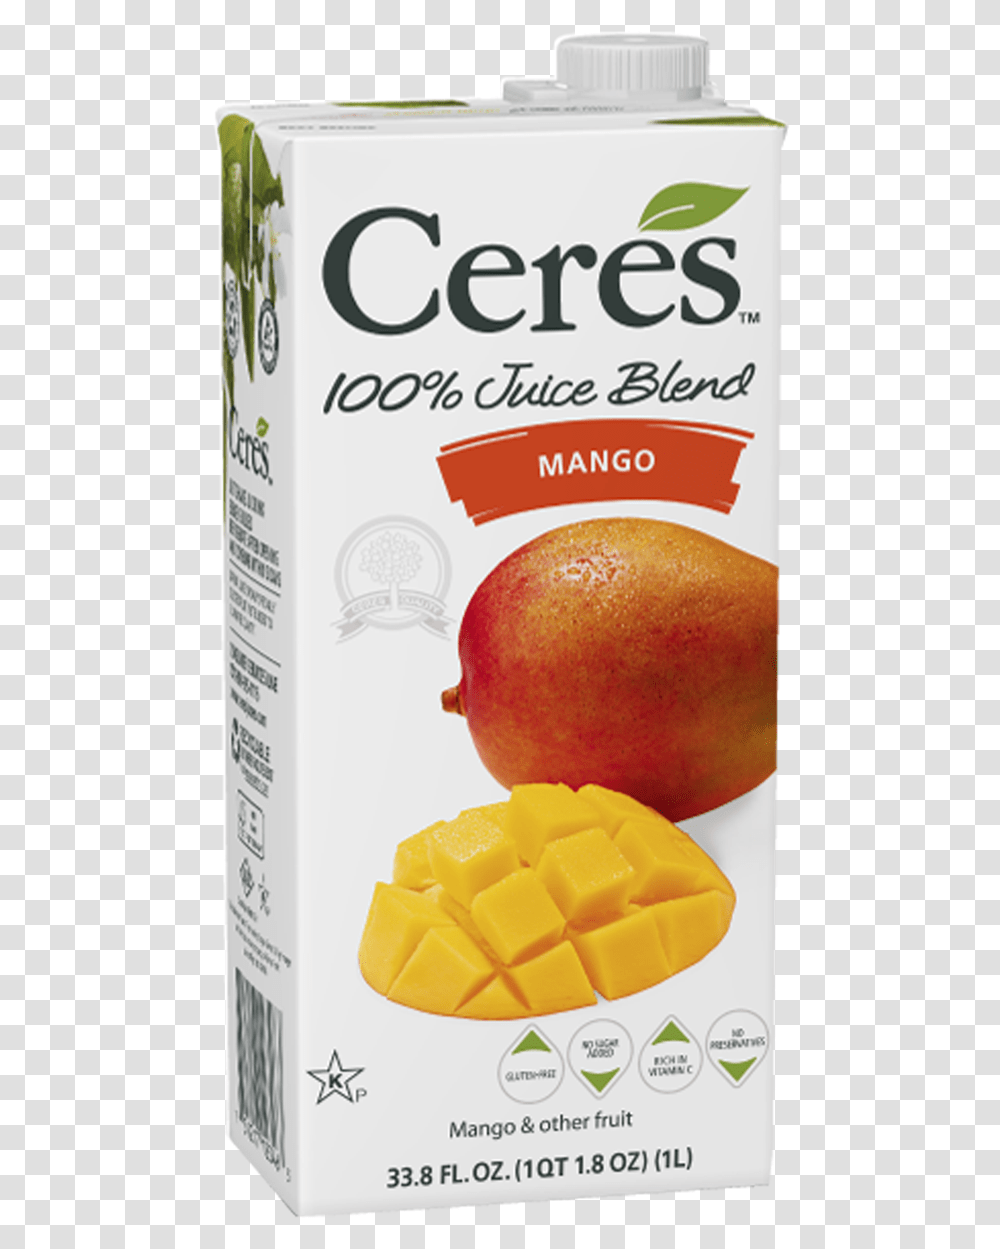 Ceres Mango Juice, Apple, Fruit, Plant, Food Transparent Png